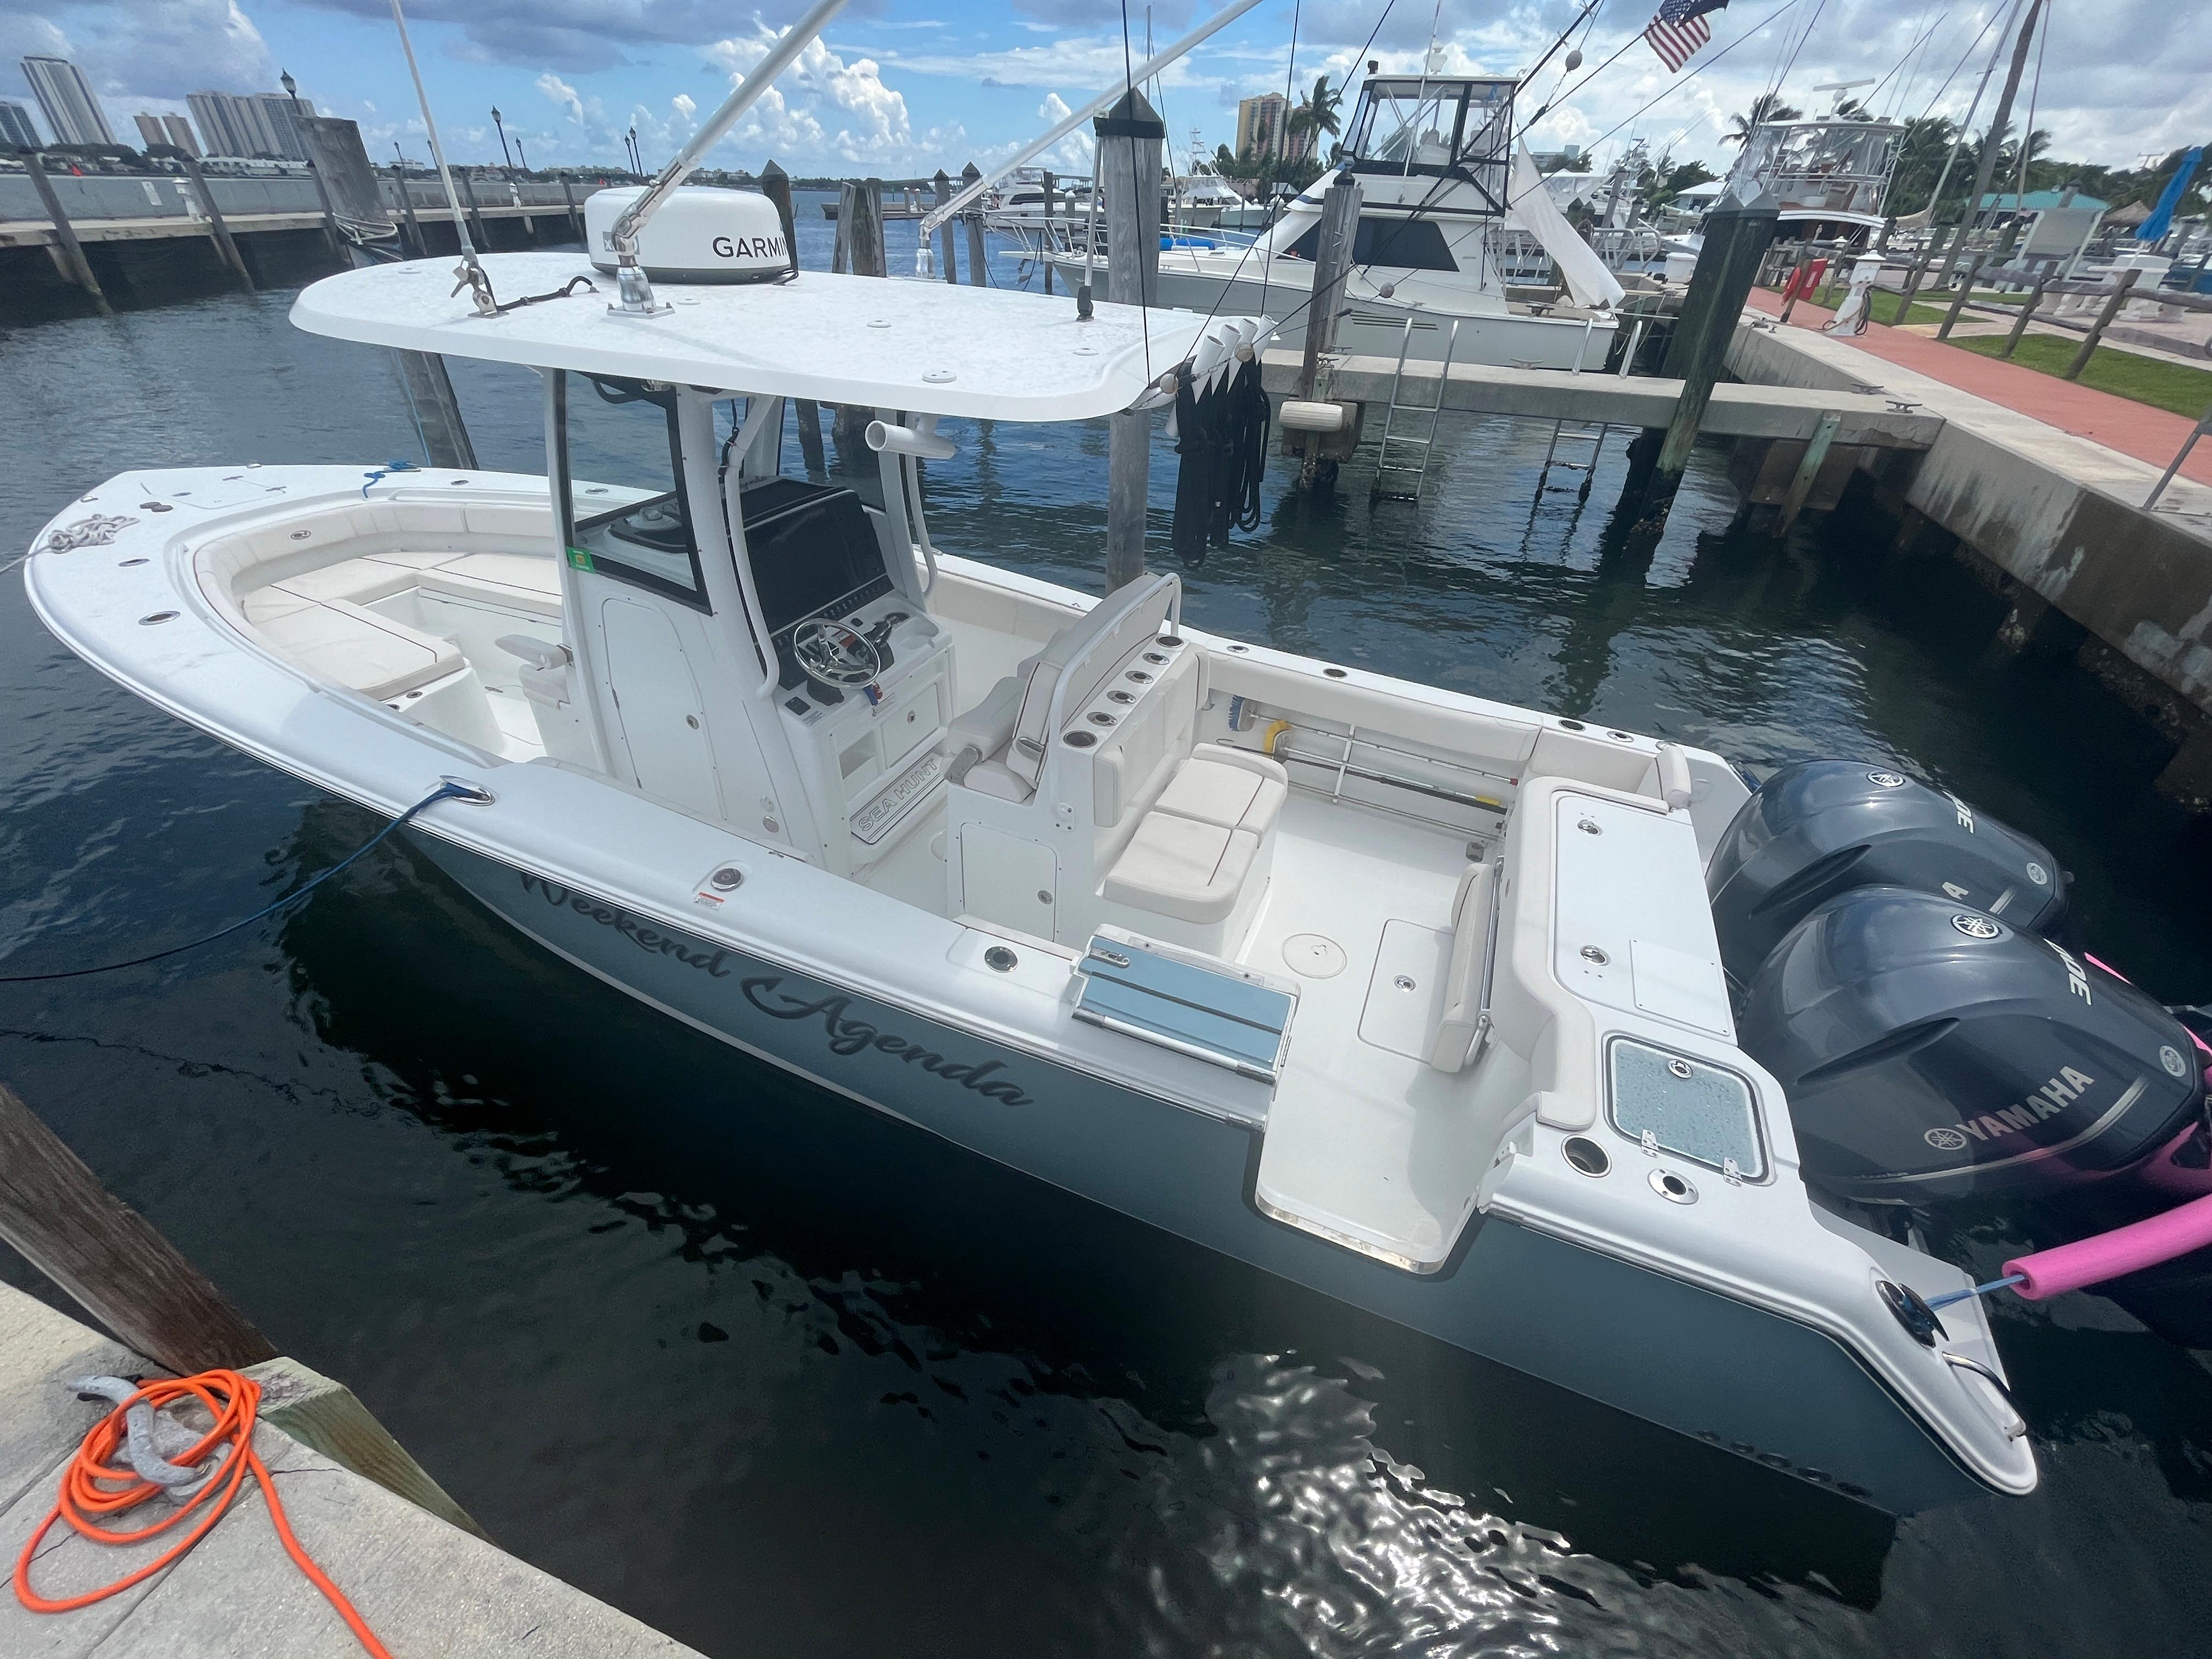 2020 Sea Hunt 30 Gamefish Yacht for Sale, 30 Sea Hunt Yachts Wellington,  FL